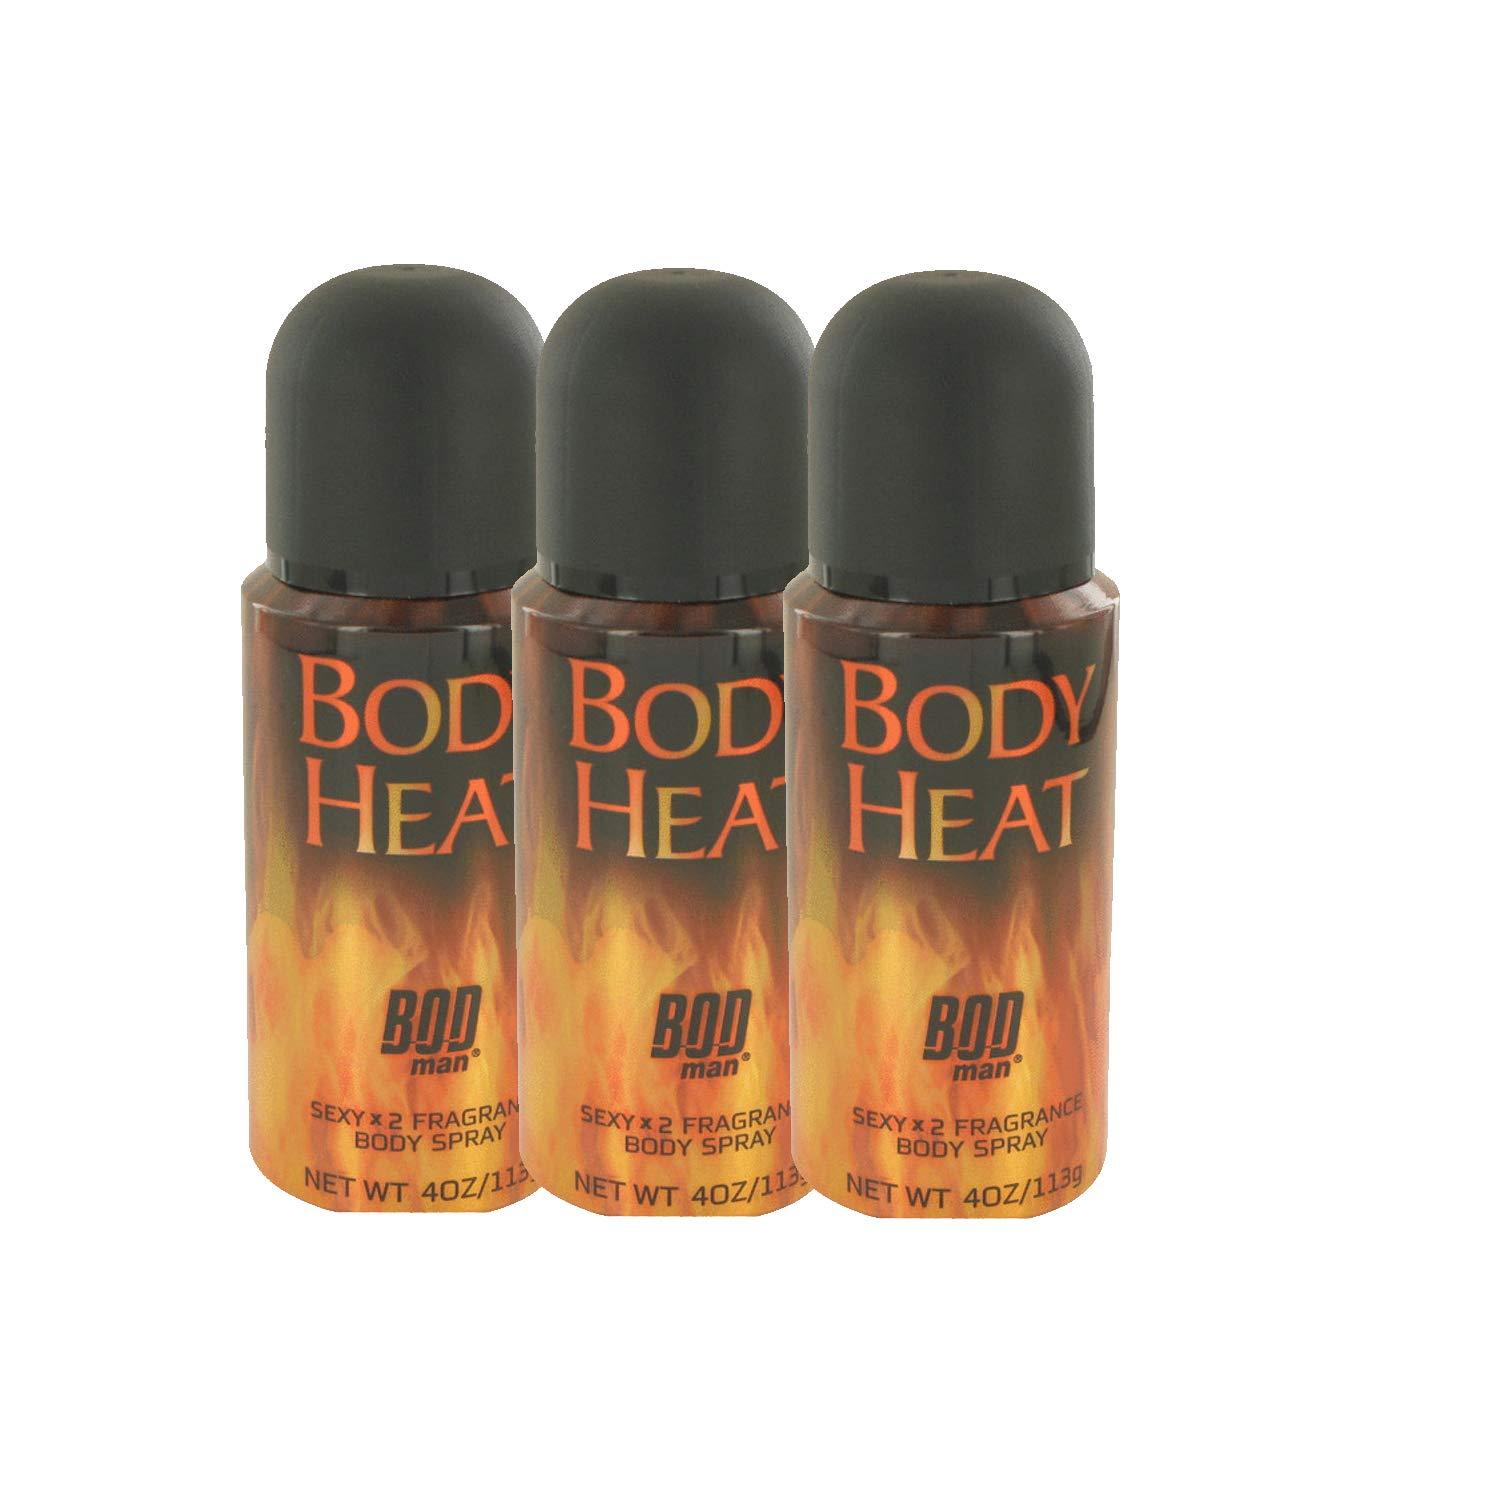 abdul bondan recommends hot bod body spray pic